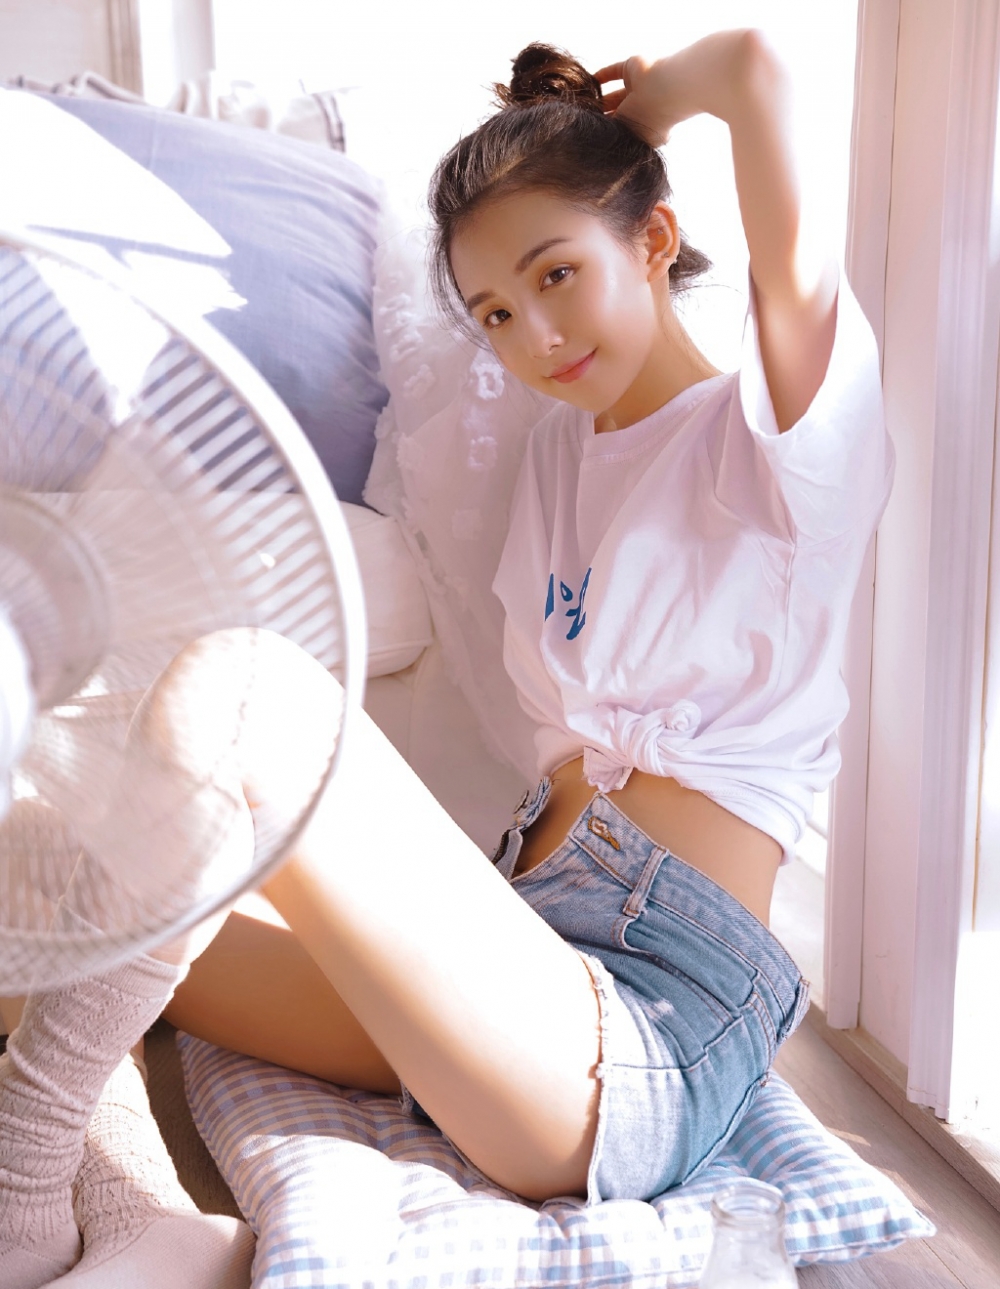 丸子头小姐姐白色T恤牛仔短裤青春活力写真